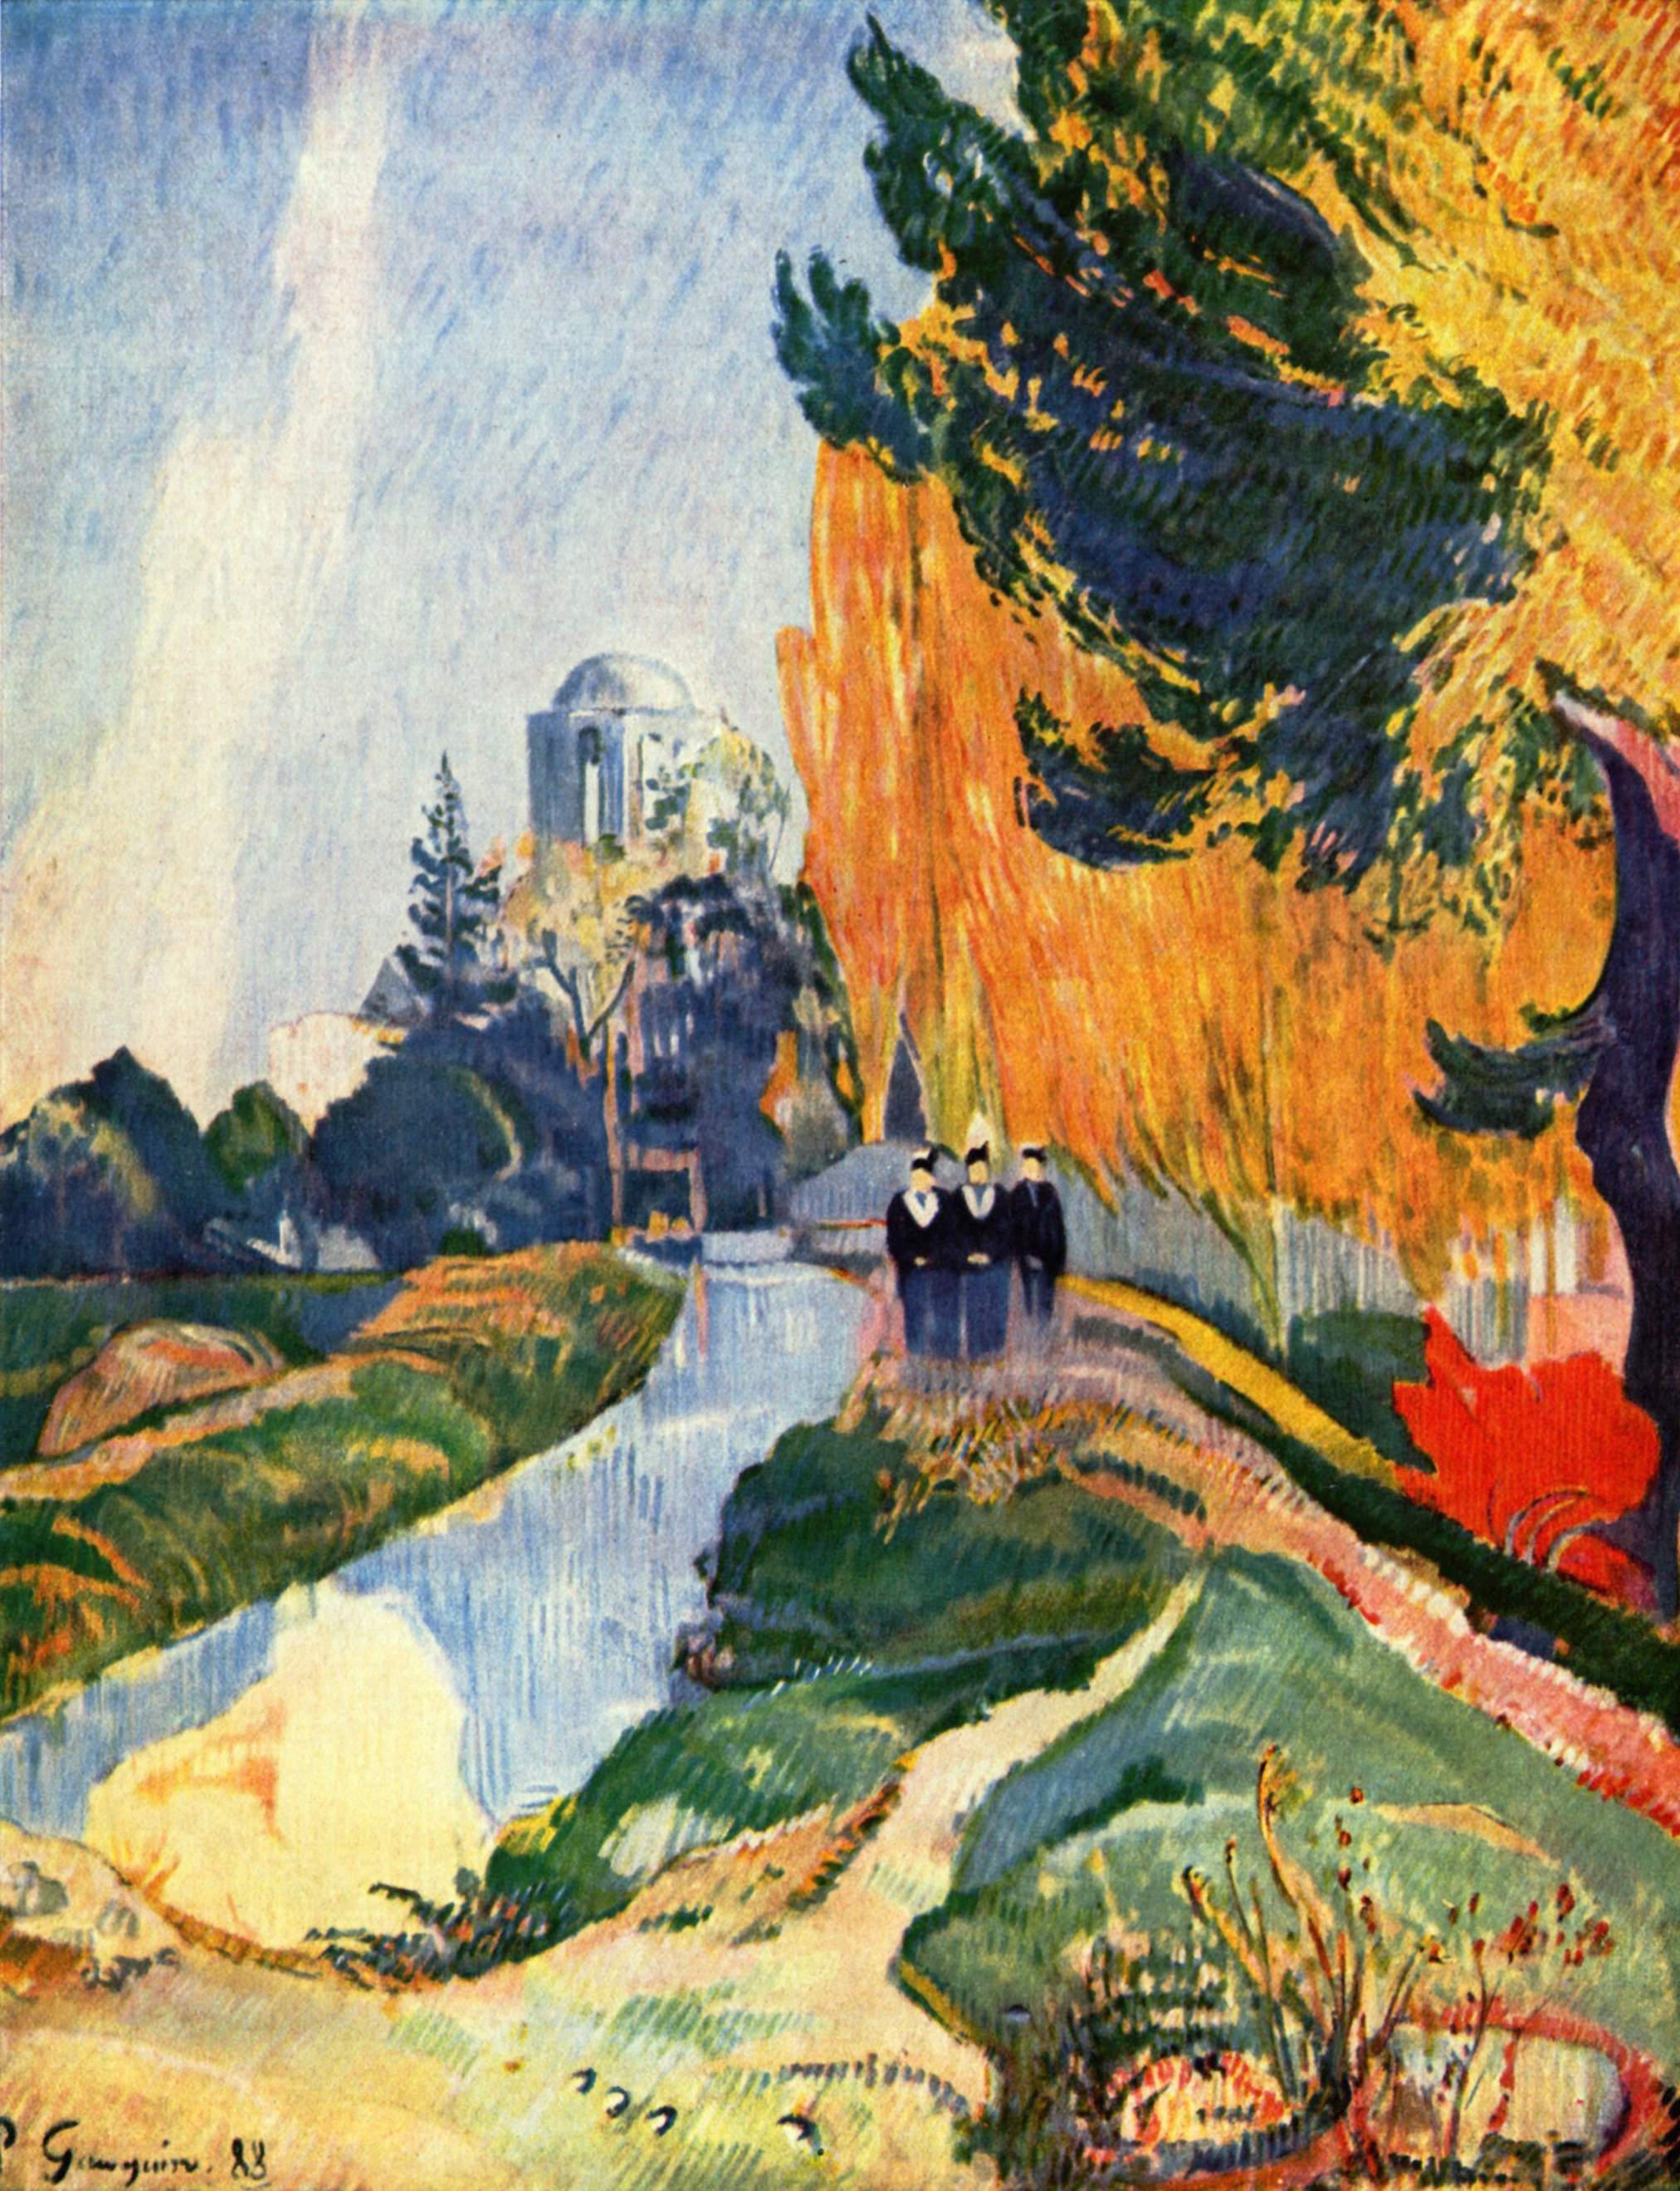 Los Alyscamps by Paul Gauguin - 1888 Musée d'Orsay